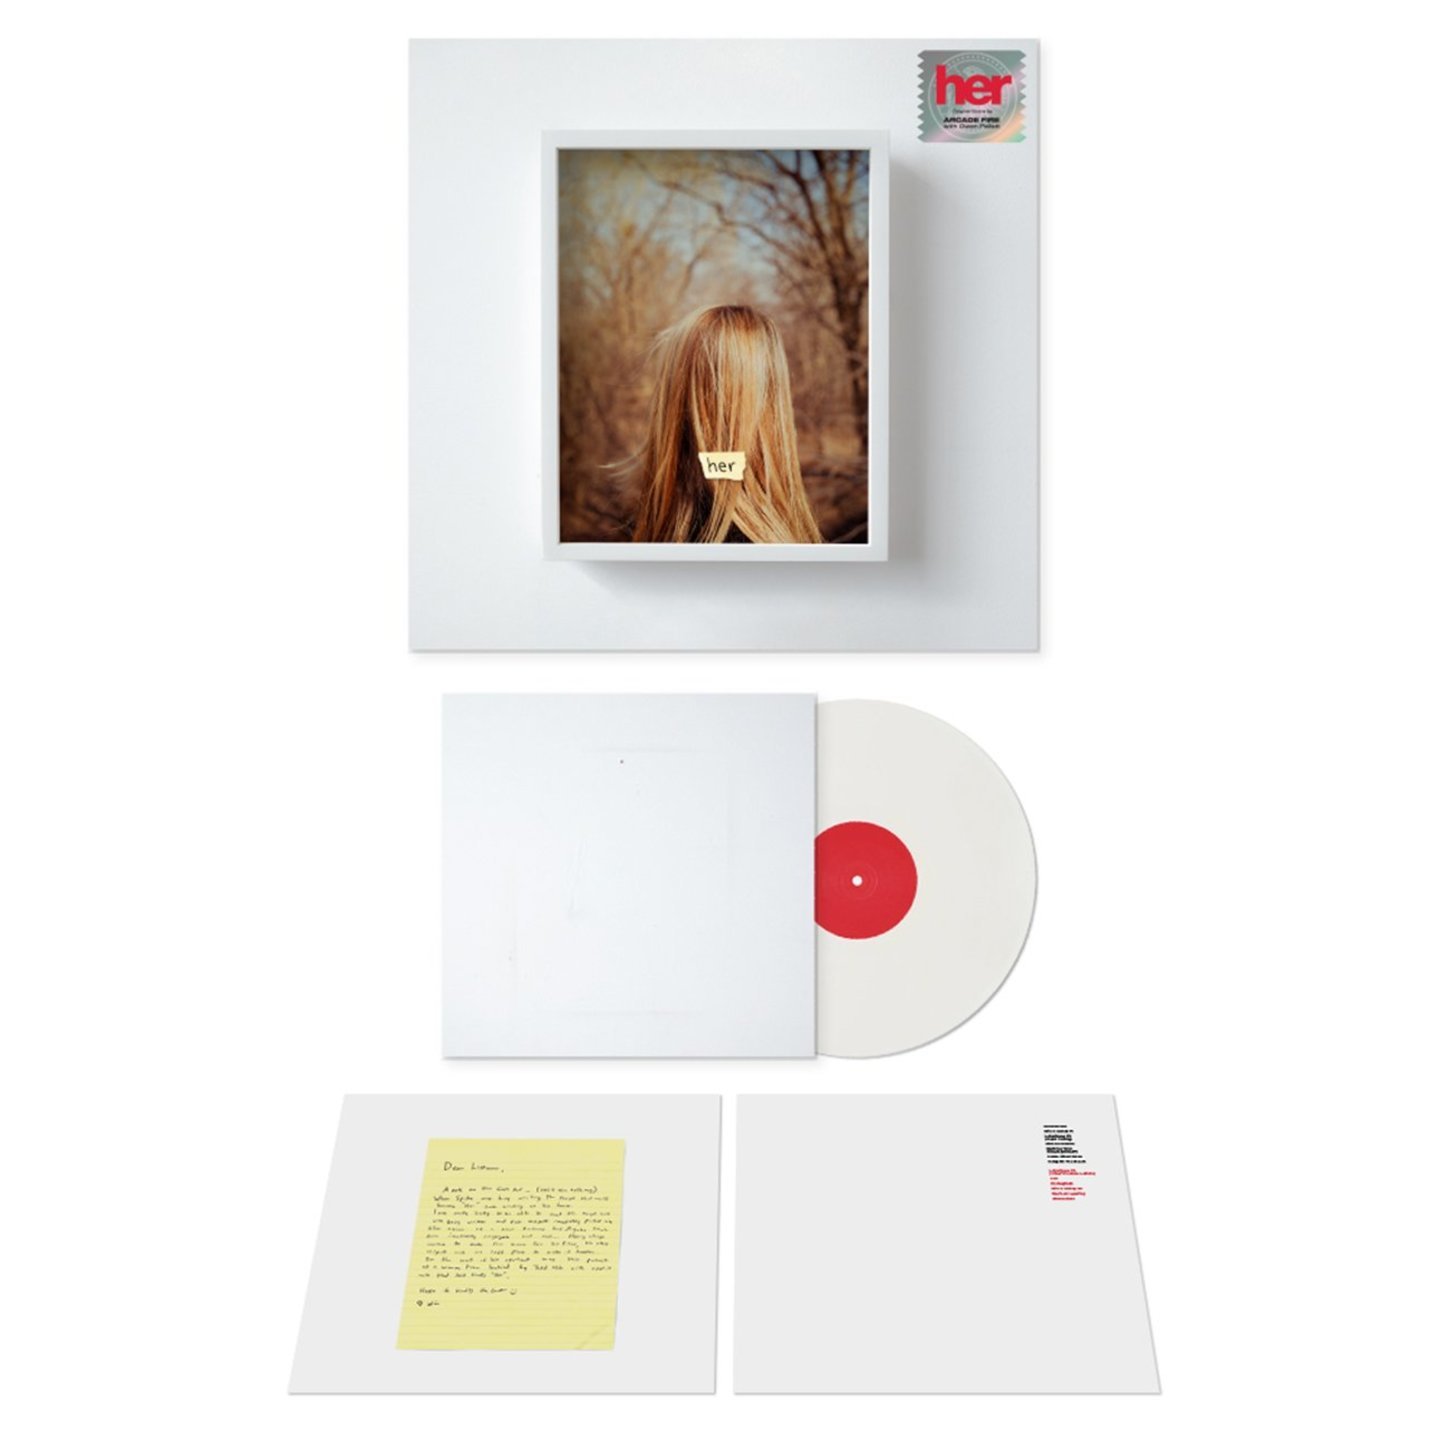 ARCADE FIRE & OWEN PALLETT - Her O.S.T LP White vinyl